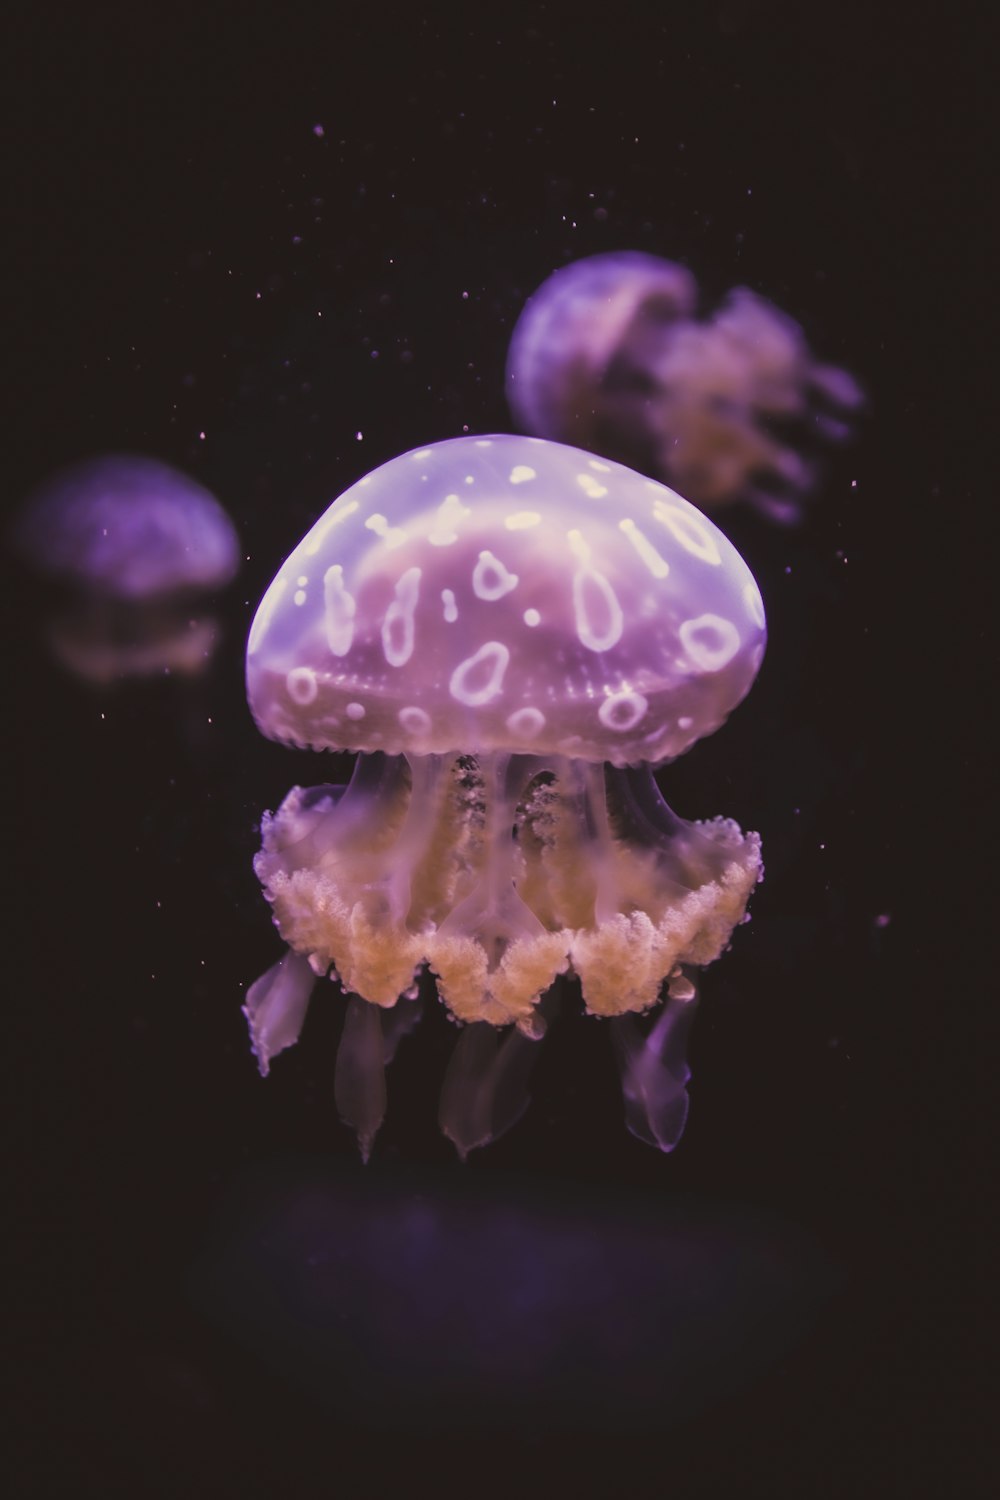 Un groupe de méduses flottant dans l’eau